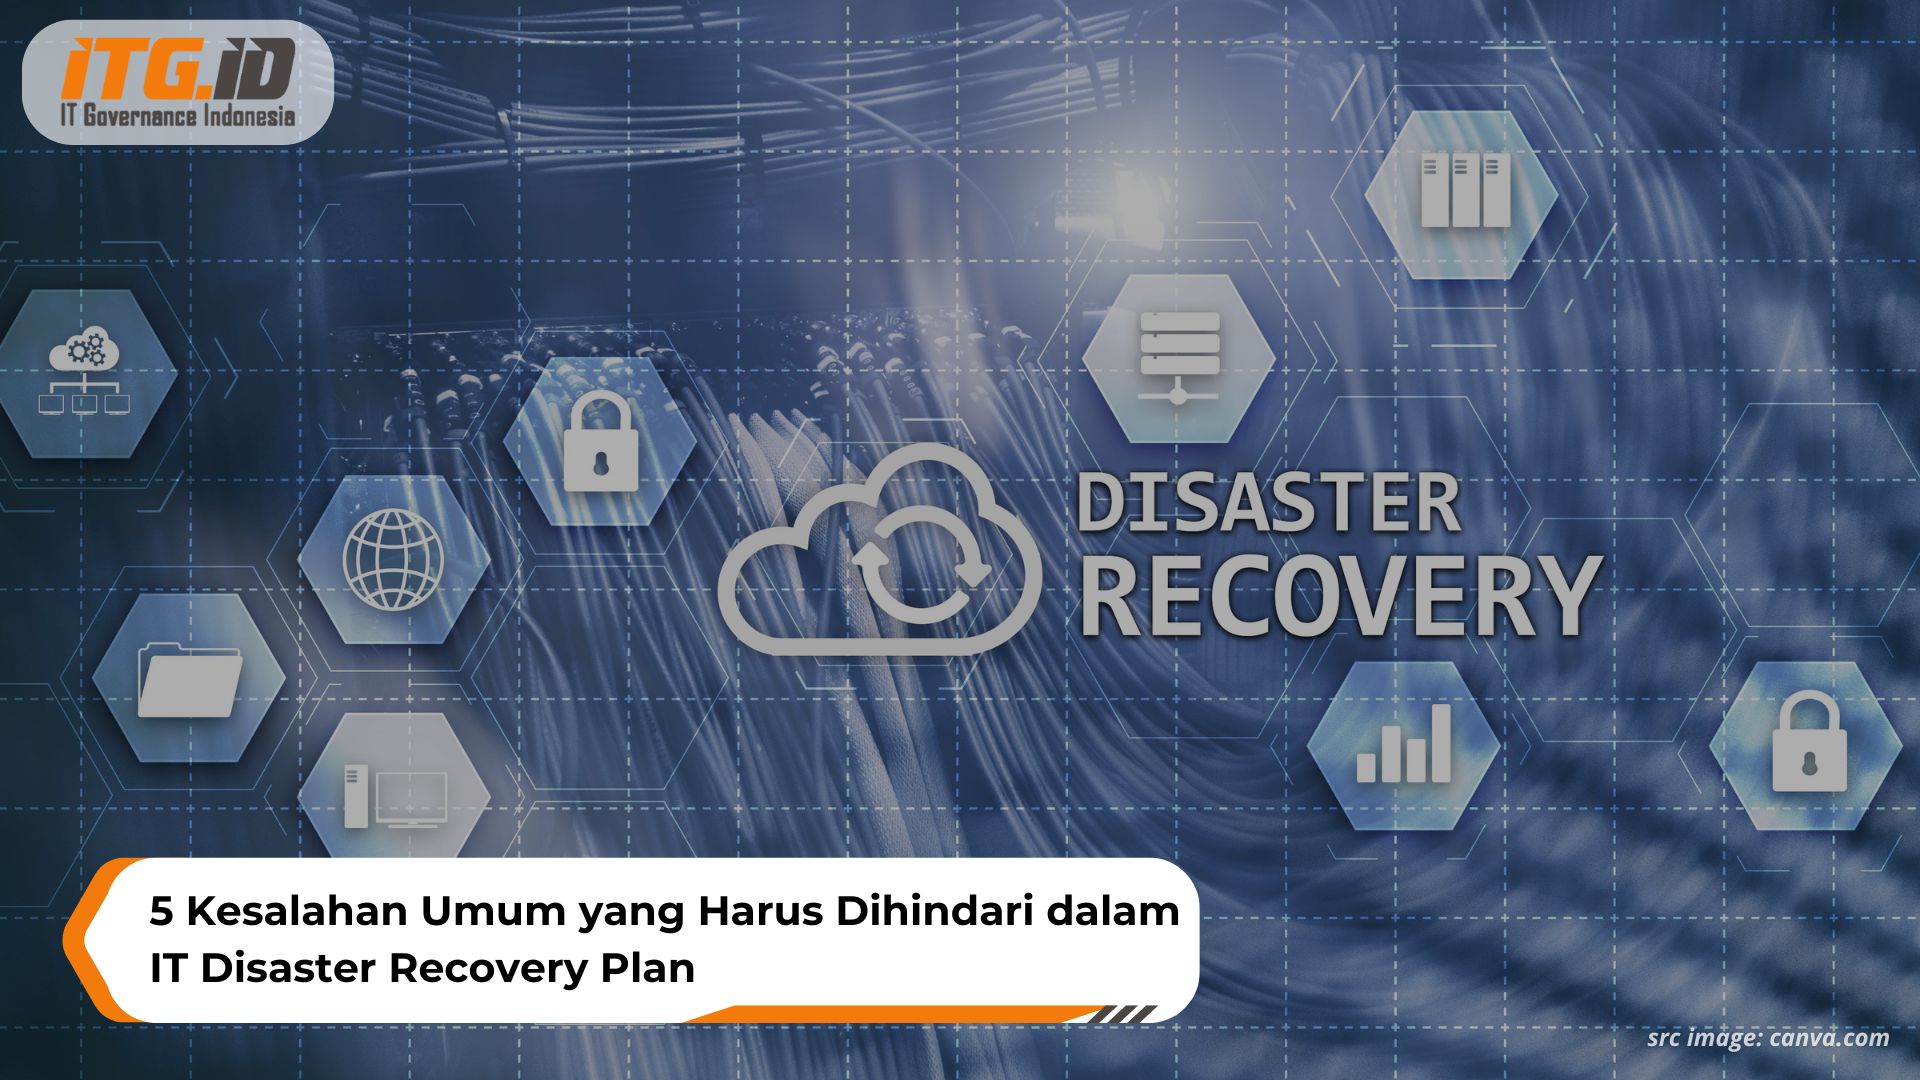 5 Kesalahan Umum yang Harus Dihindari dalam IT Disaster Recovery Plan